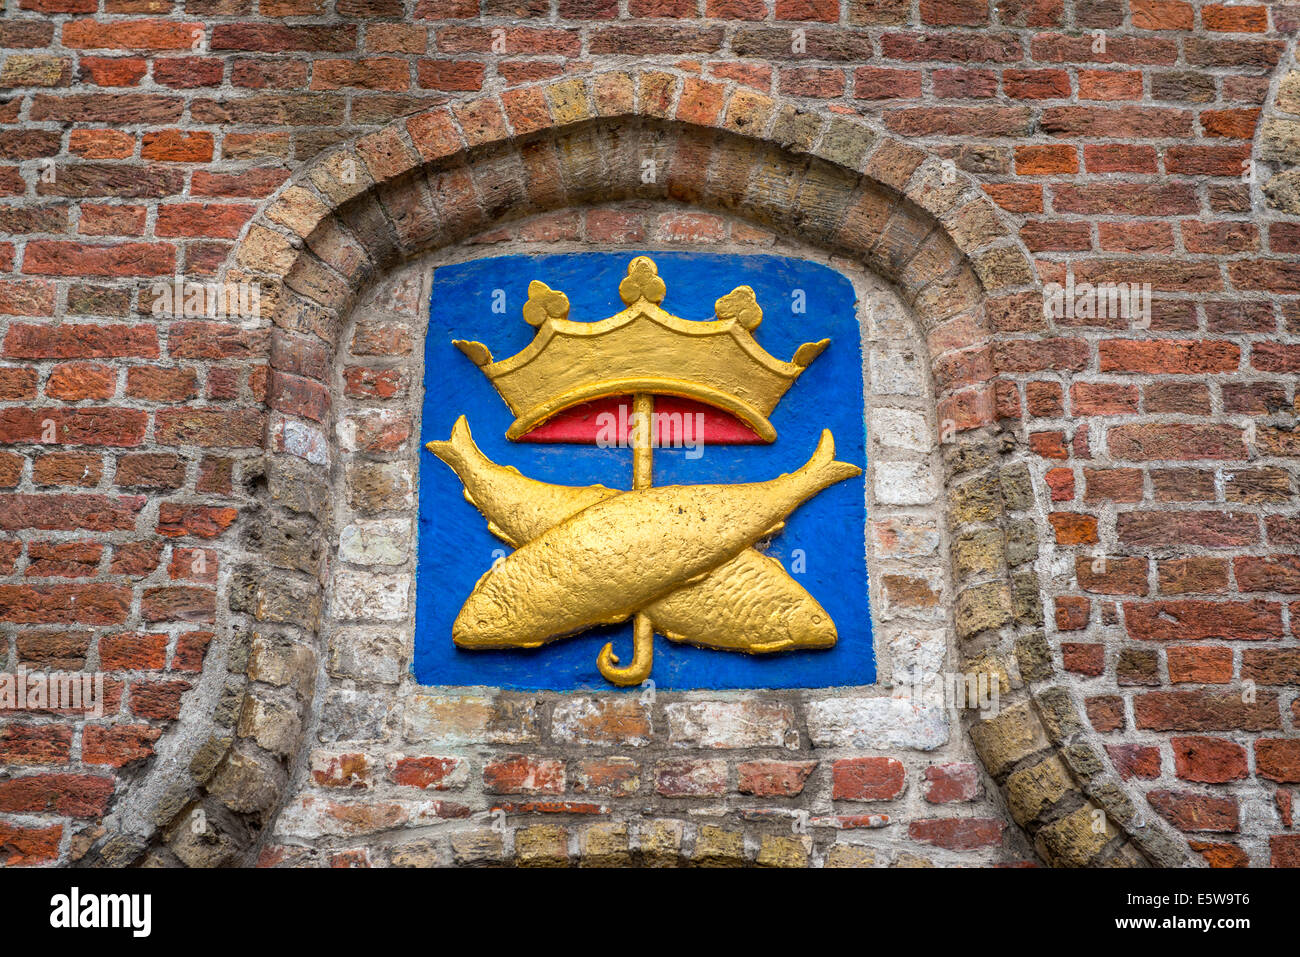 Escudo de armas, pescaderías corporation house, Brujas Foto de stock